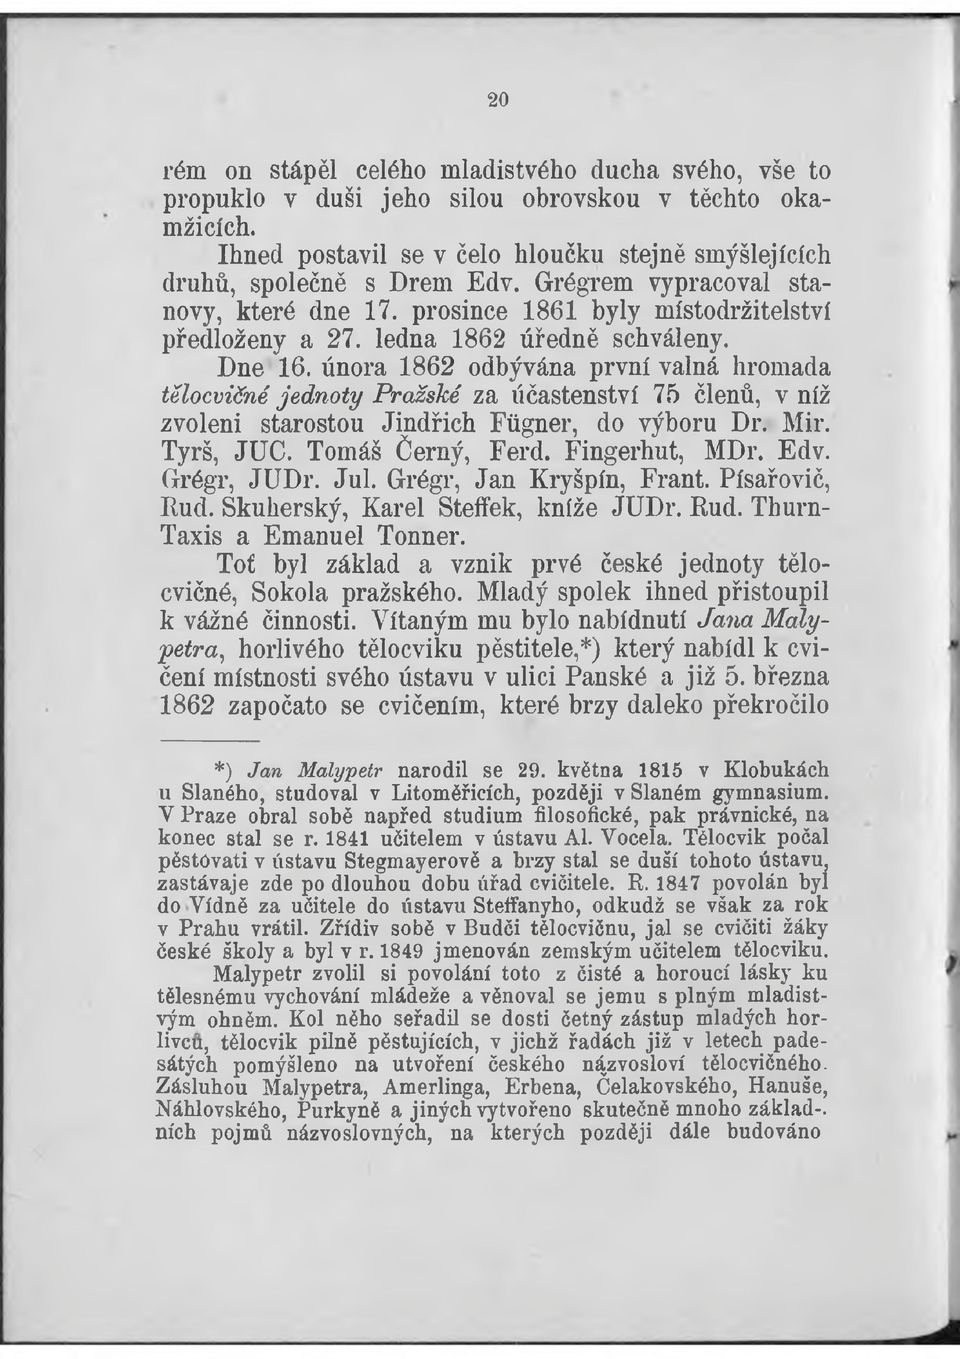 února 1862 odbývána první valná hromada tělocvičné jednoty Pražské za účastenství 75 členů, v níž zvoleni starostou Jindřich Fiigner, do výboru Dr. Mir. Tyrš, JUC. Tomáš Černý, Ferd. Fingerhut, MDr.